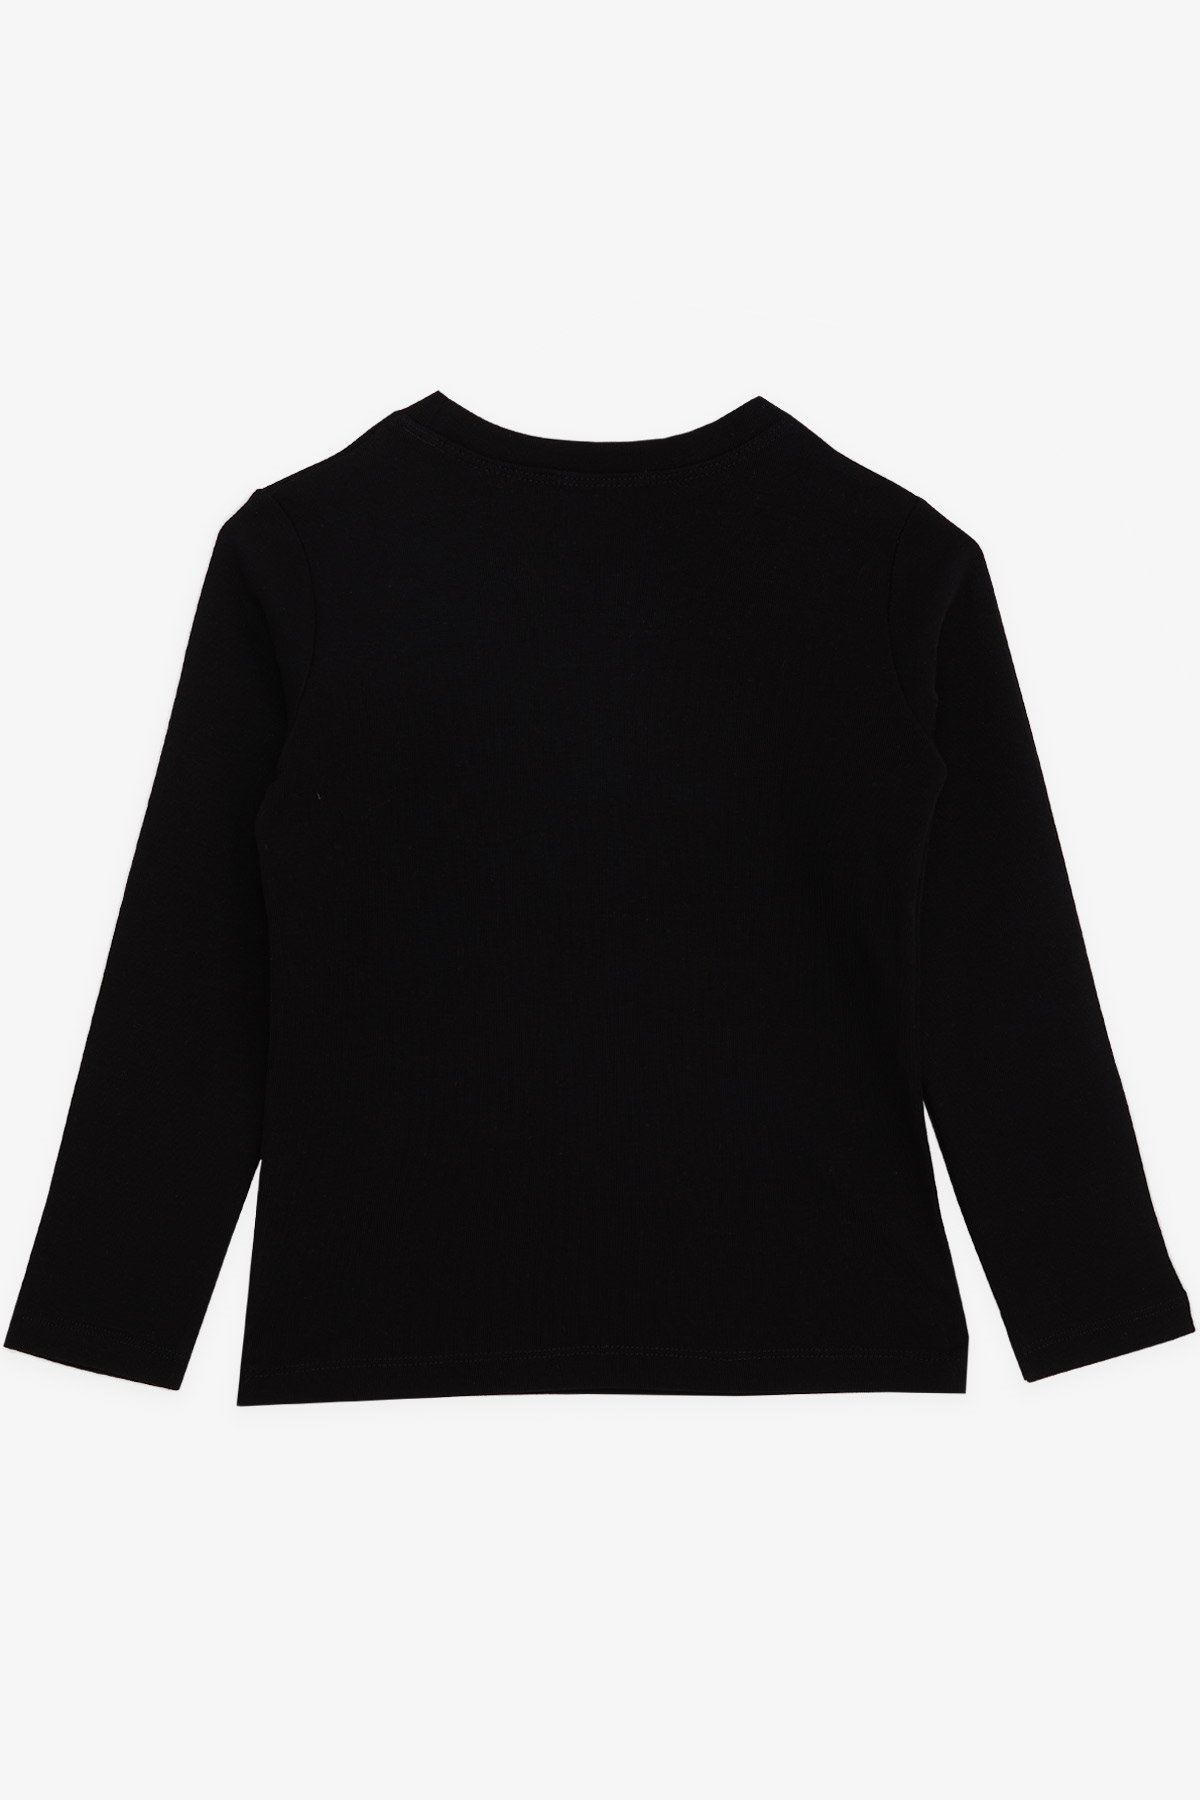 Erkek Çocuk Uzun Kollu Tişört Basic Siyah 5-6 Yaş - Penye Kumaş | Breeze